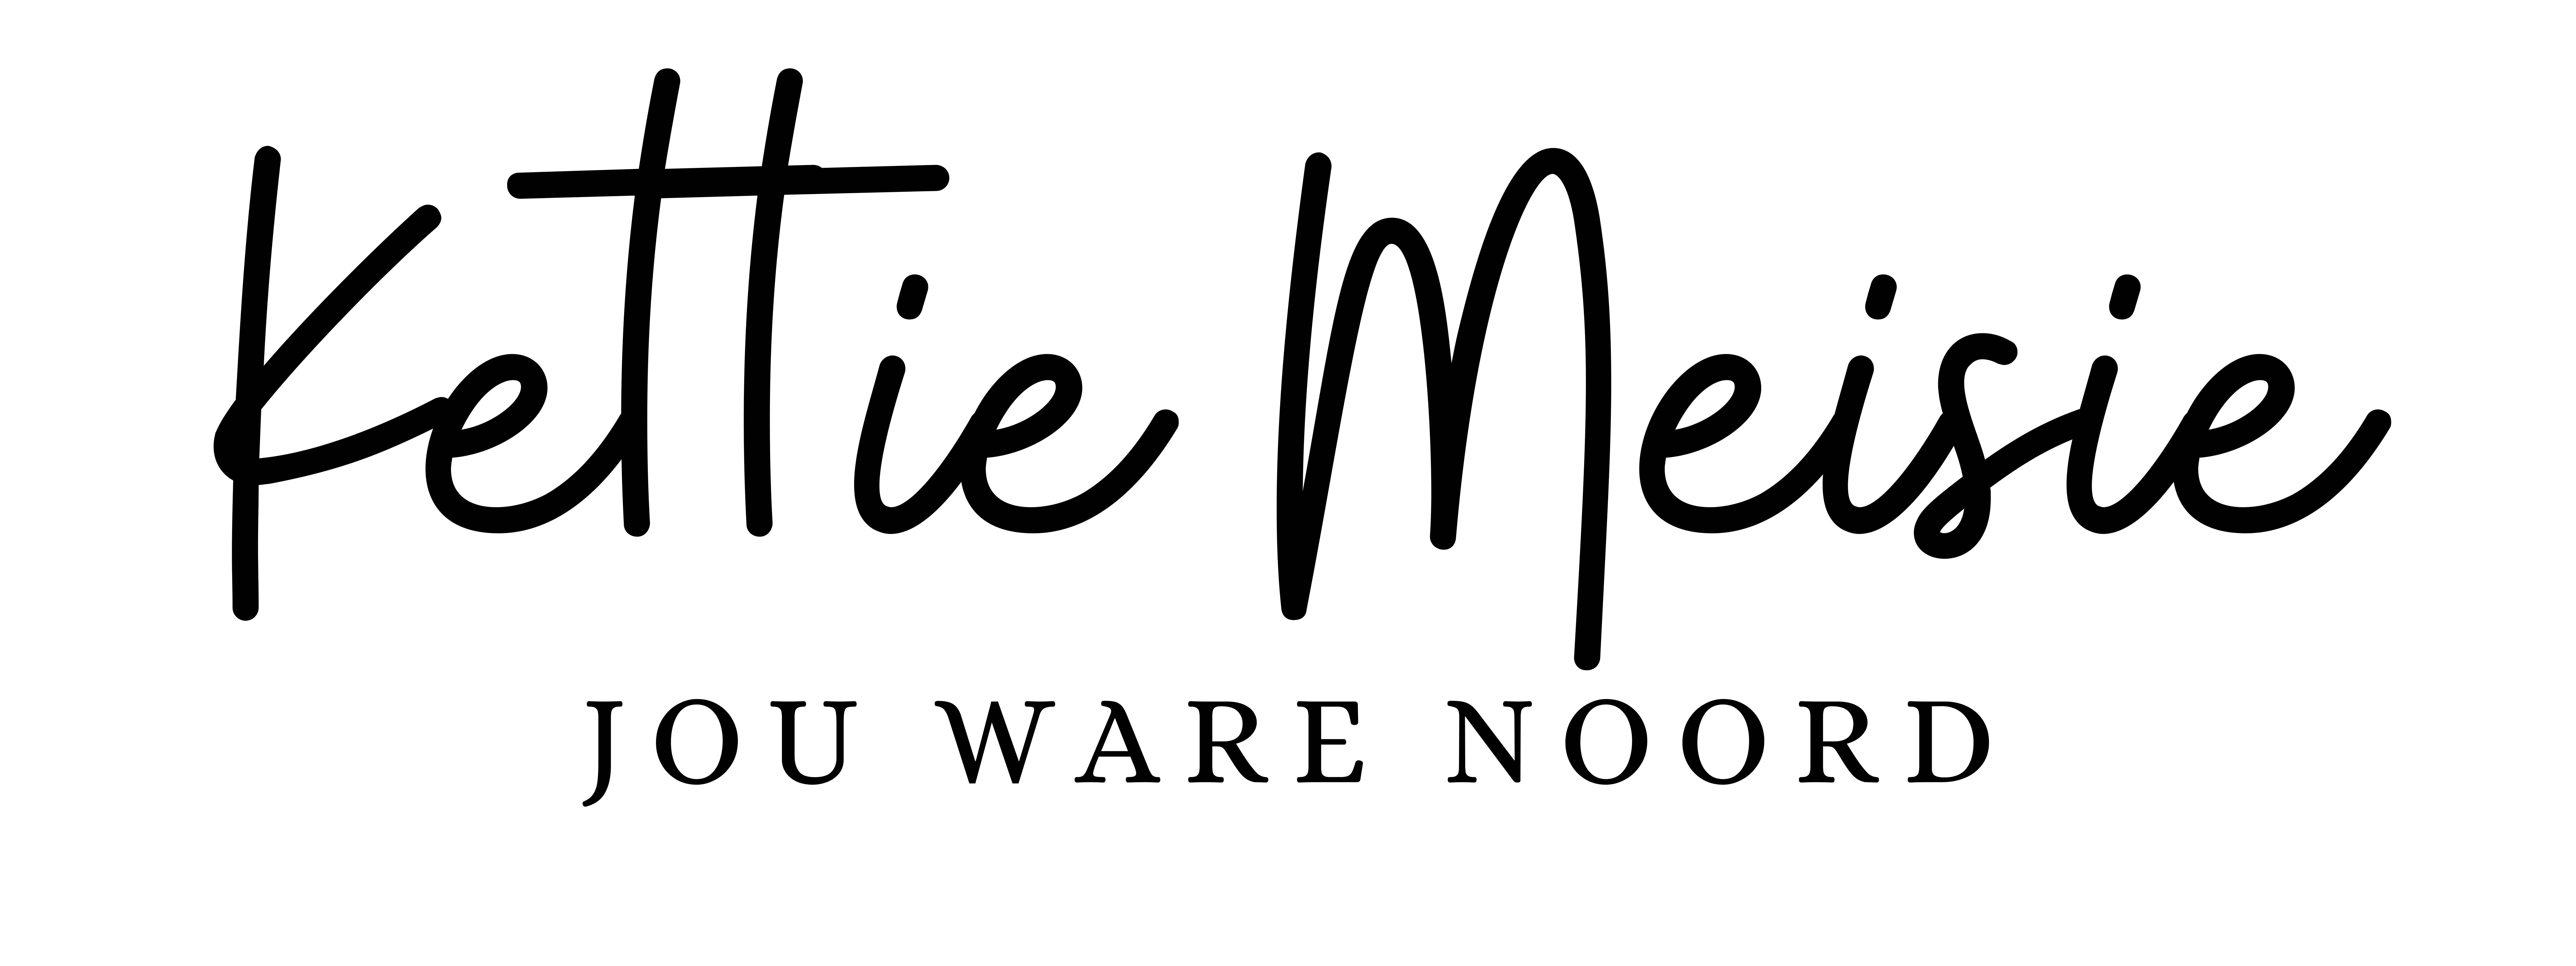 Kettie Meisie Logo